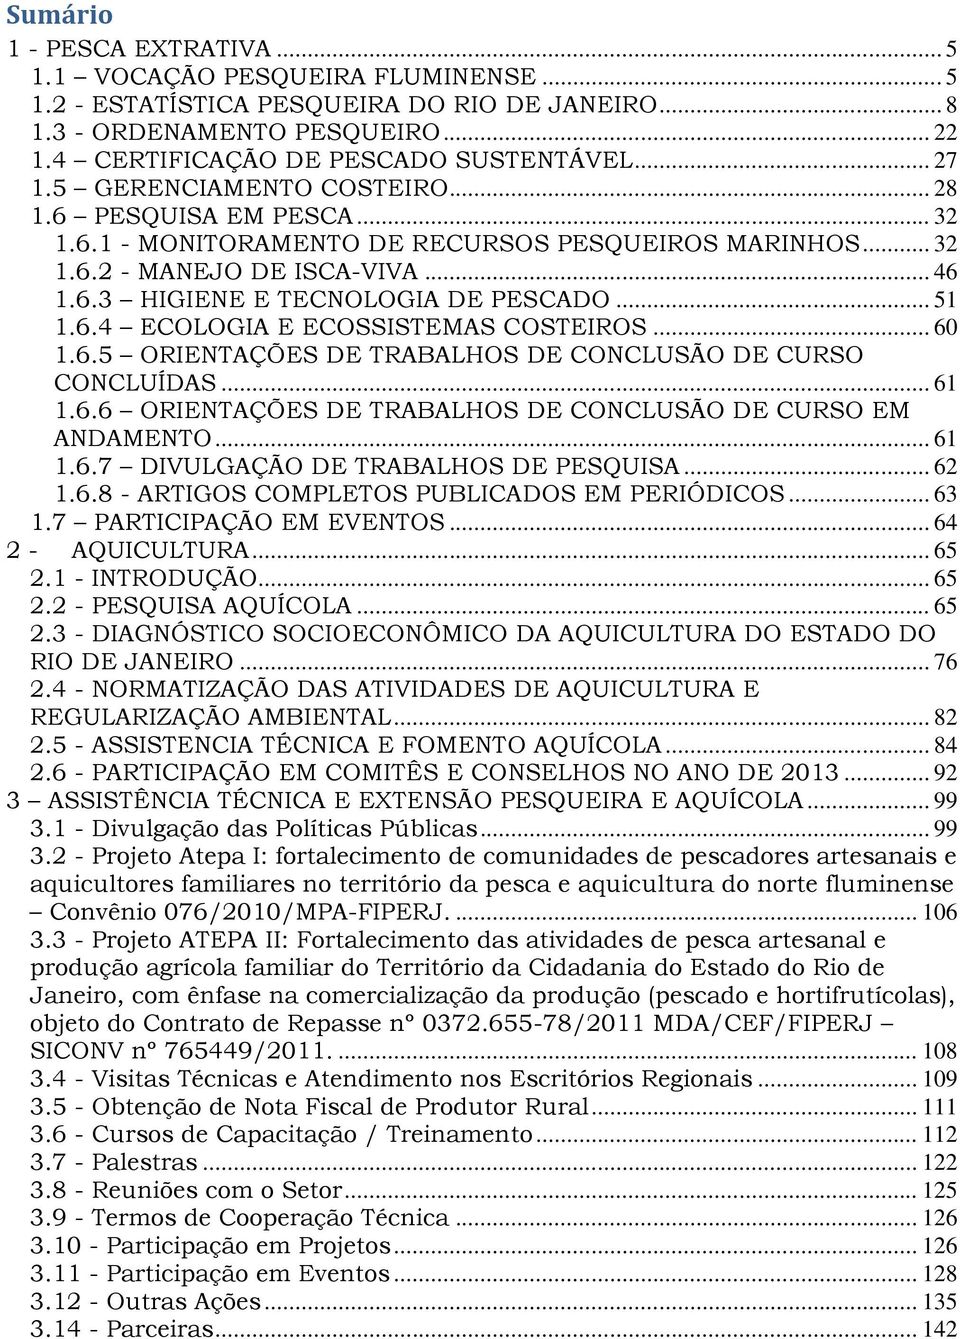 .. 51 1.6.4 ECOLOGIA E ECOSSISTEMAS COSTEIROS... 60 1.6.5 ORIENTAÇÕES DE TRABALHOS DE CONCLUSÃO DE CURSO CONCLUÍDAS... 61 1.6.6 ORIENTAÇÕES DE TRABALHOS DE CONCLUSÃO DE CURSO EM ANDAMENTO... 61 1.6.7 DIVULGAÇÃO DE TRABALHOS DE PESQUISA.